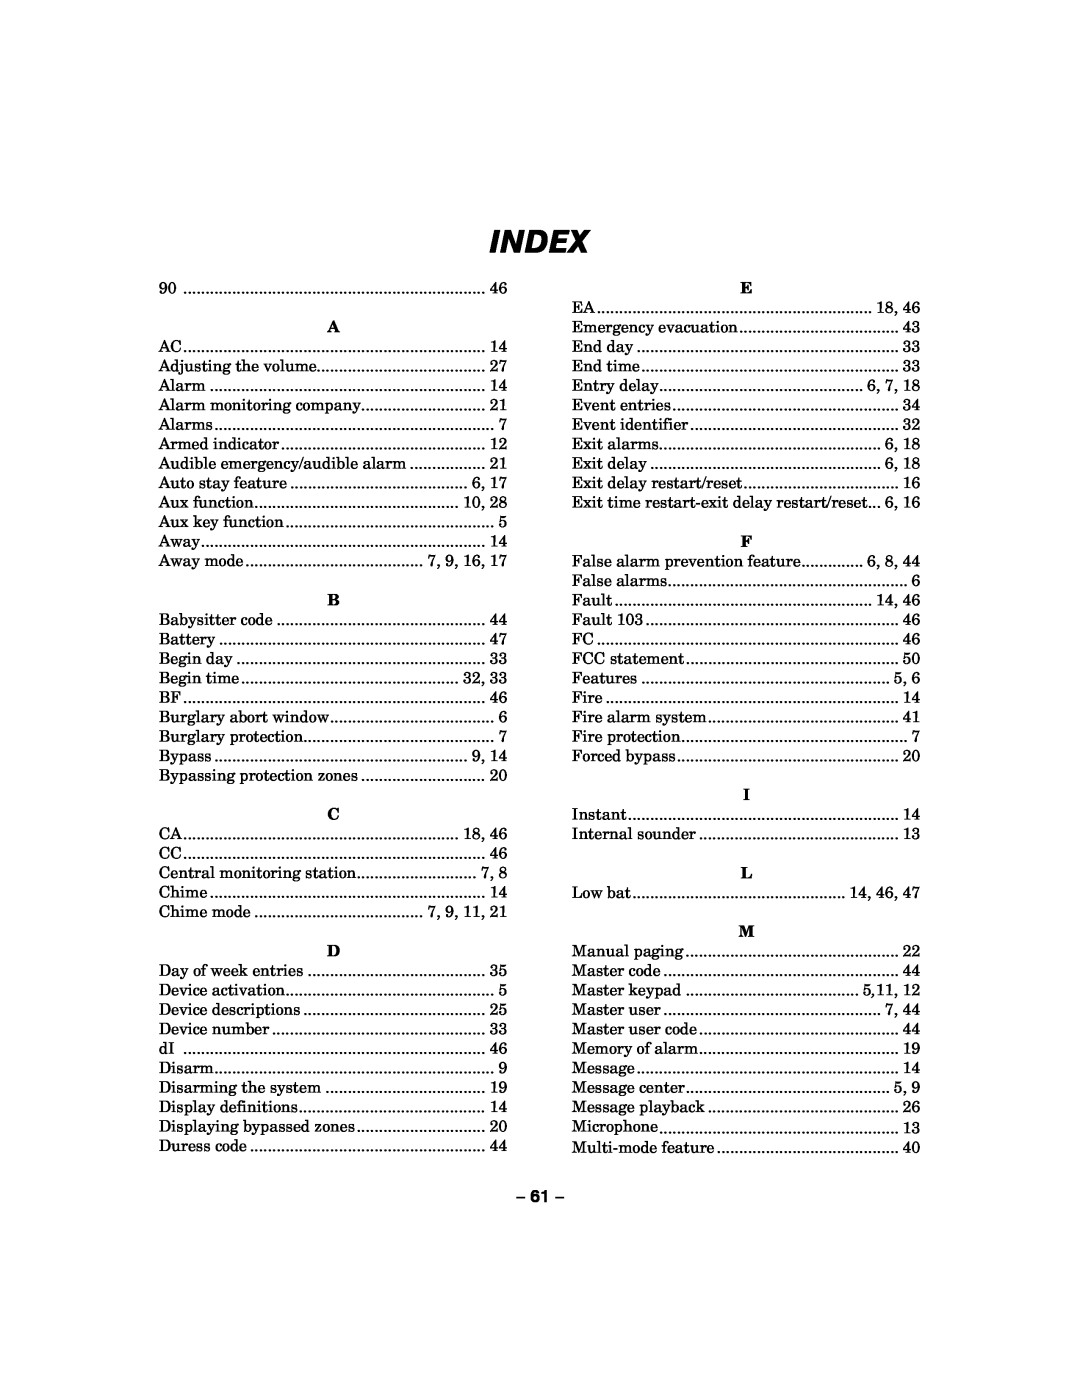 Honeywell LYNXR-2 manual Index 